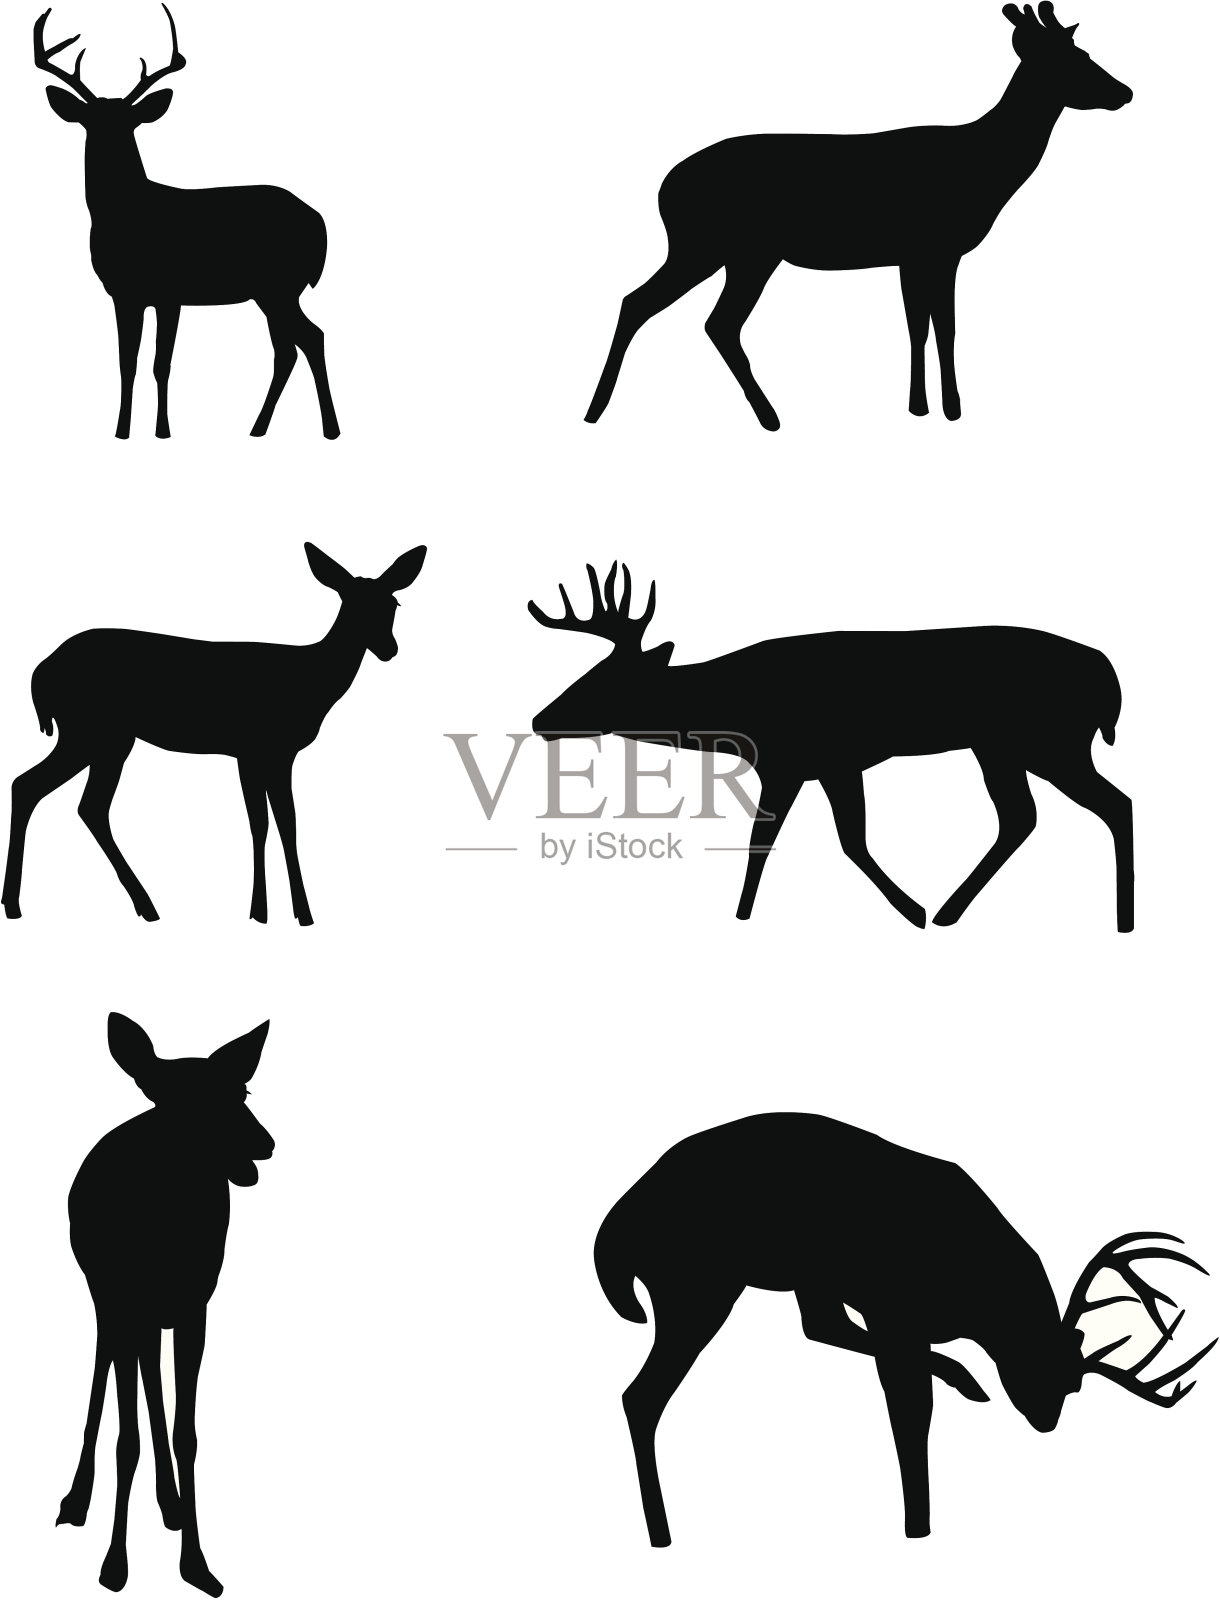 鹿轮廓插画图片素材